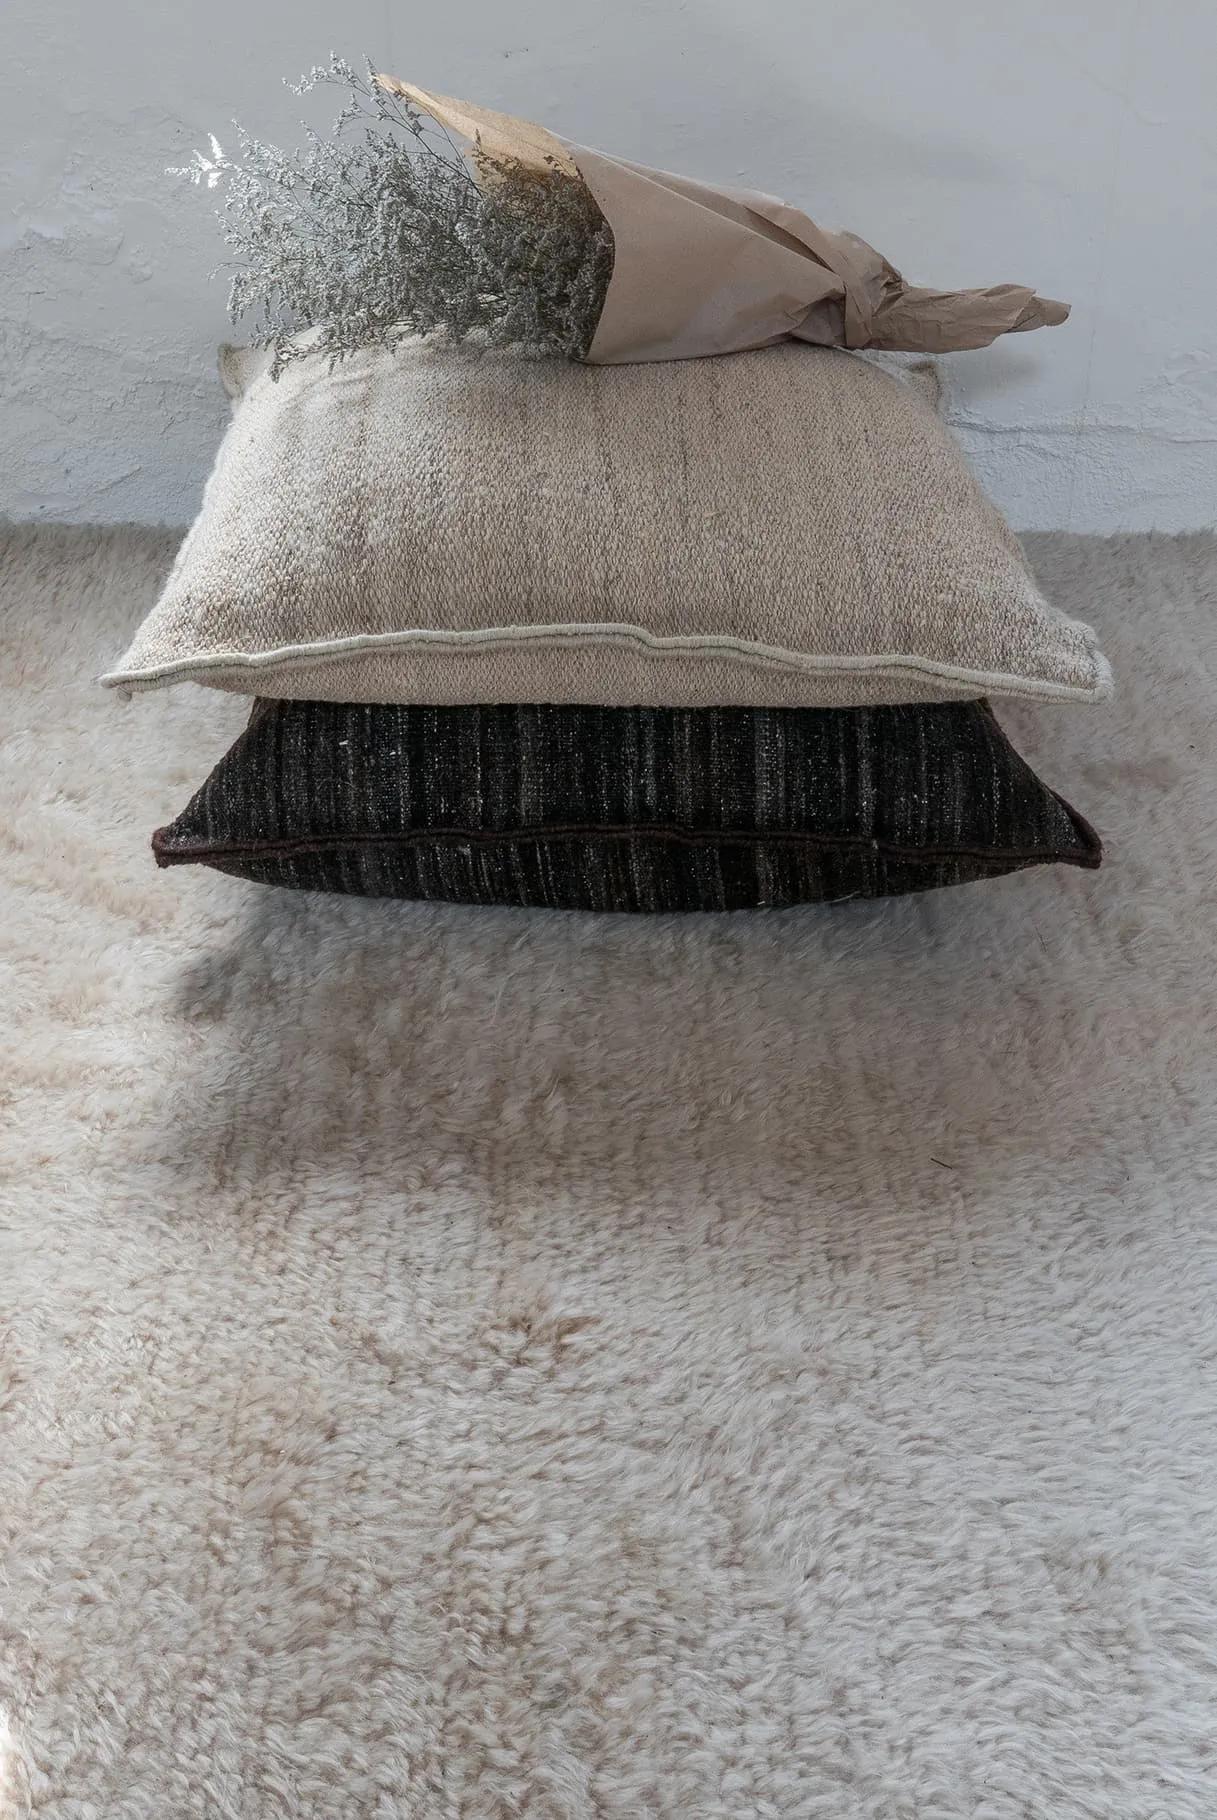 Schweres Kelimkissen 'Wellbeing' von Ilse Crawford für Nanimarquina.

Aus 100 % handgesponnener afghanischer Wolle gefertigt und mit 100 % Kork gefüllt, bringt dieses Kissen Wärme, Weichheit und Komfort in jeden Raum. Für die Wellbeing